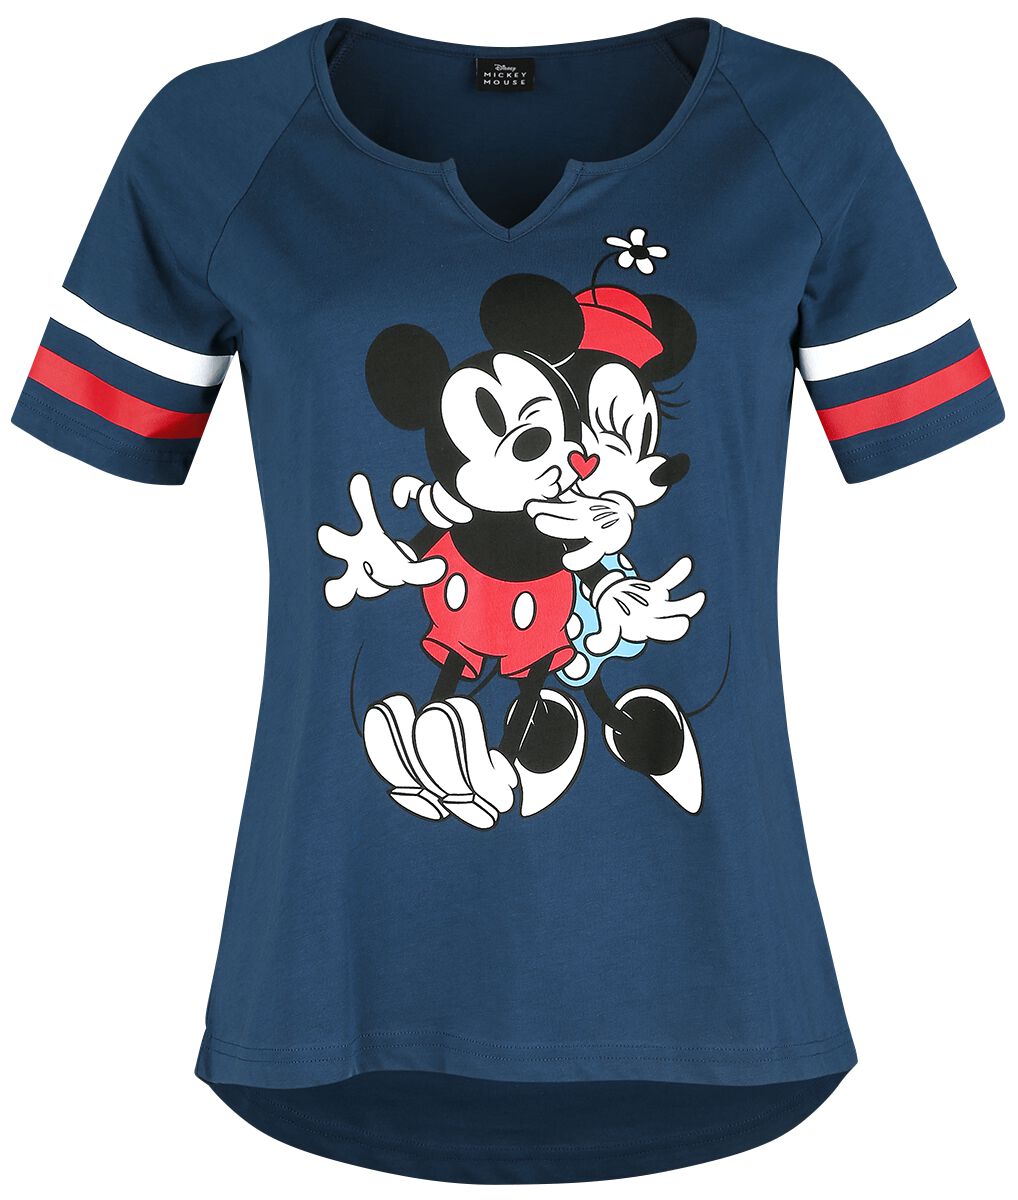 Image of T-Shirt Disney di Minnie & Topolino - Mickey Mouse Buddies - S a XXL - Donna - blu